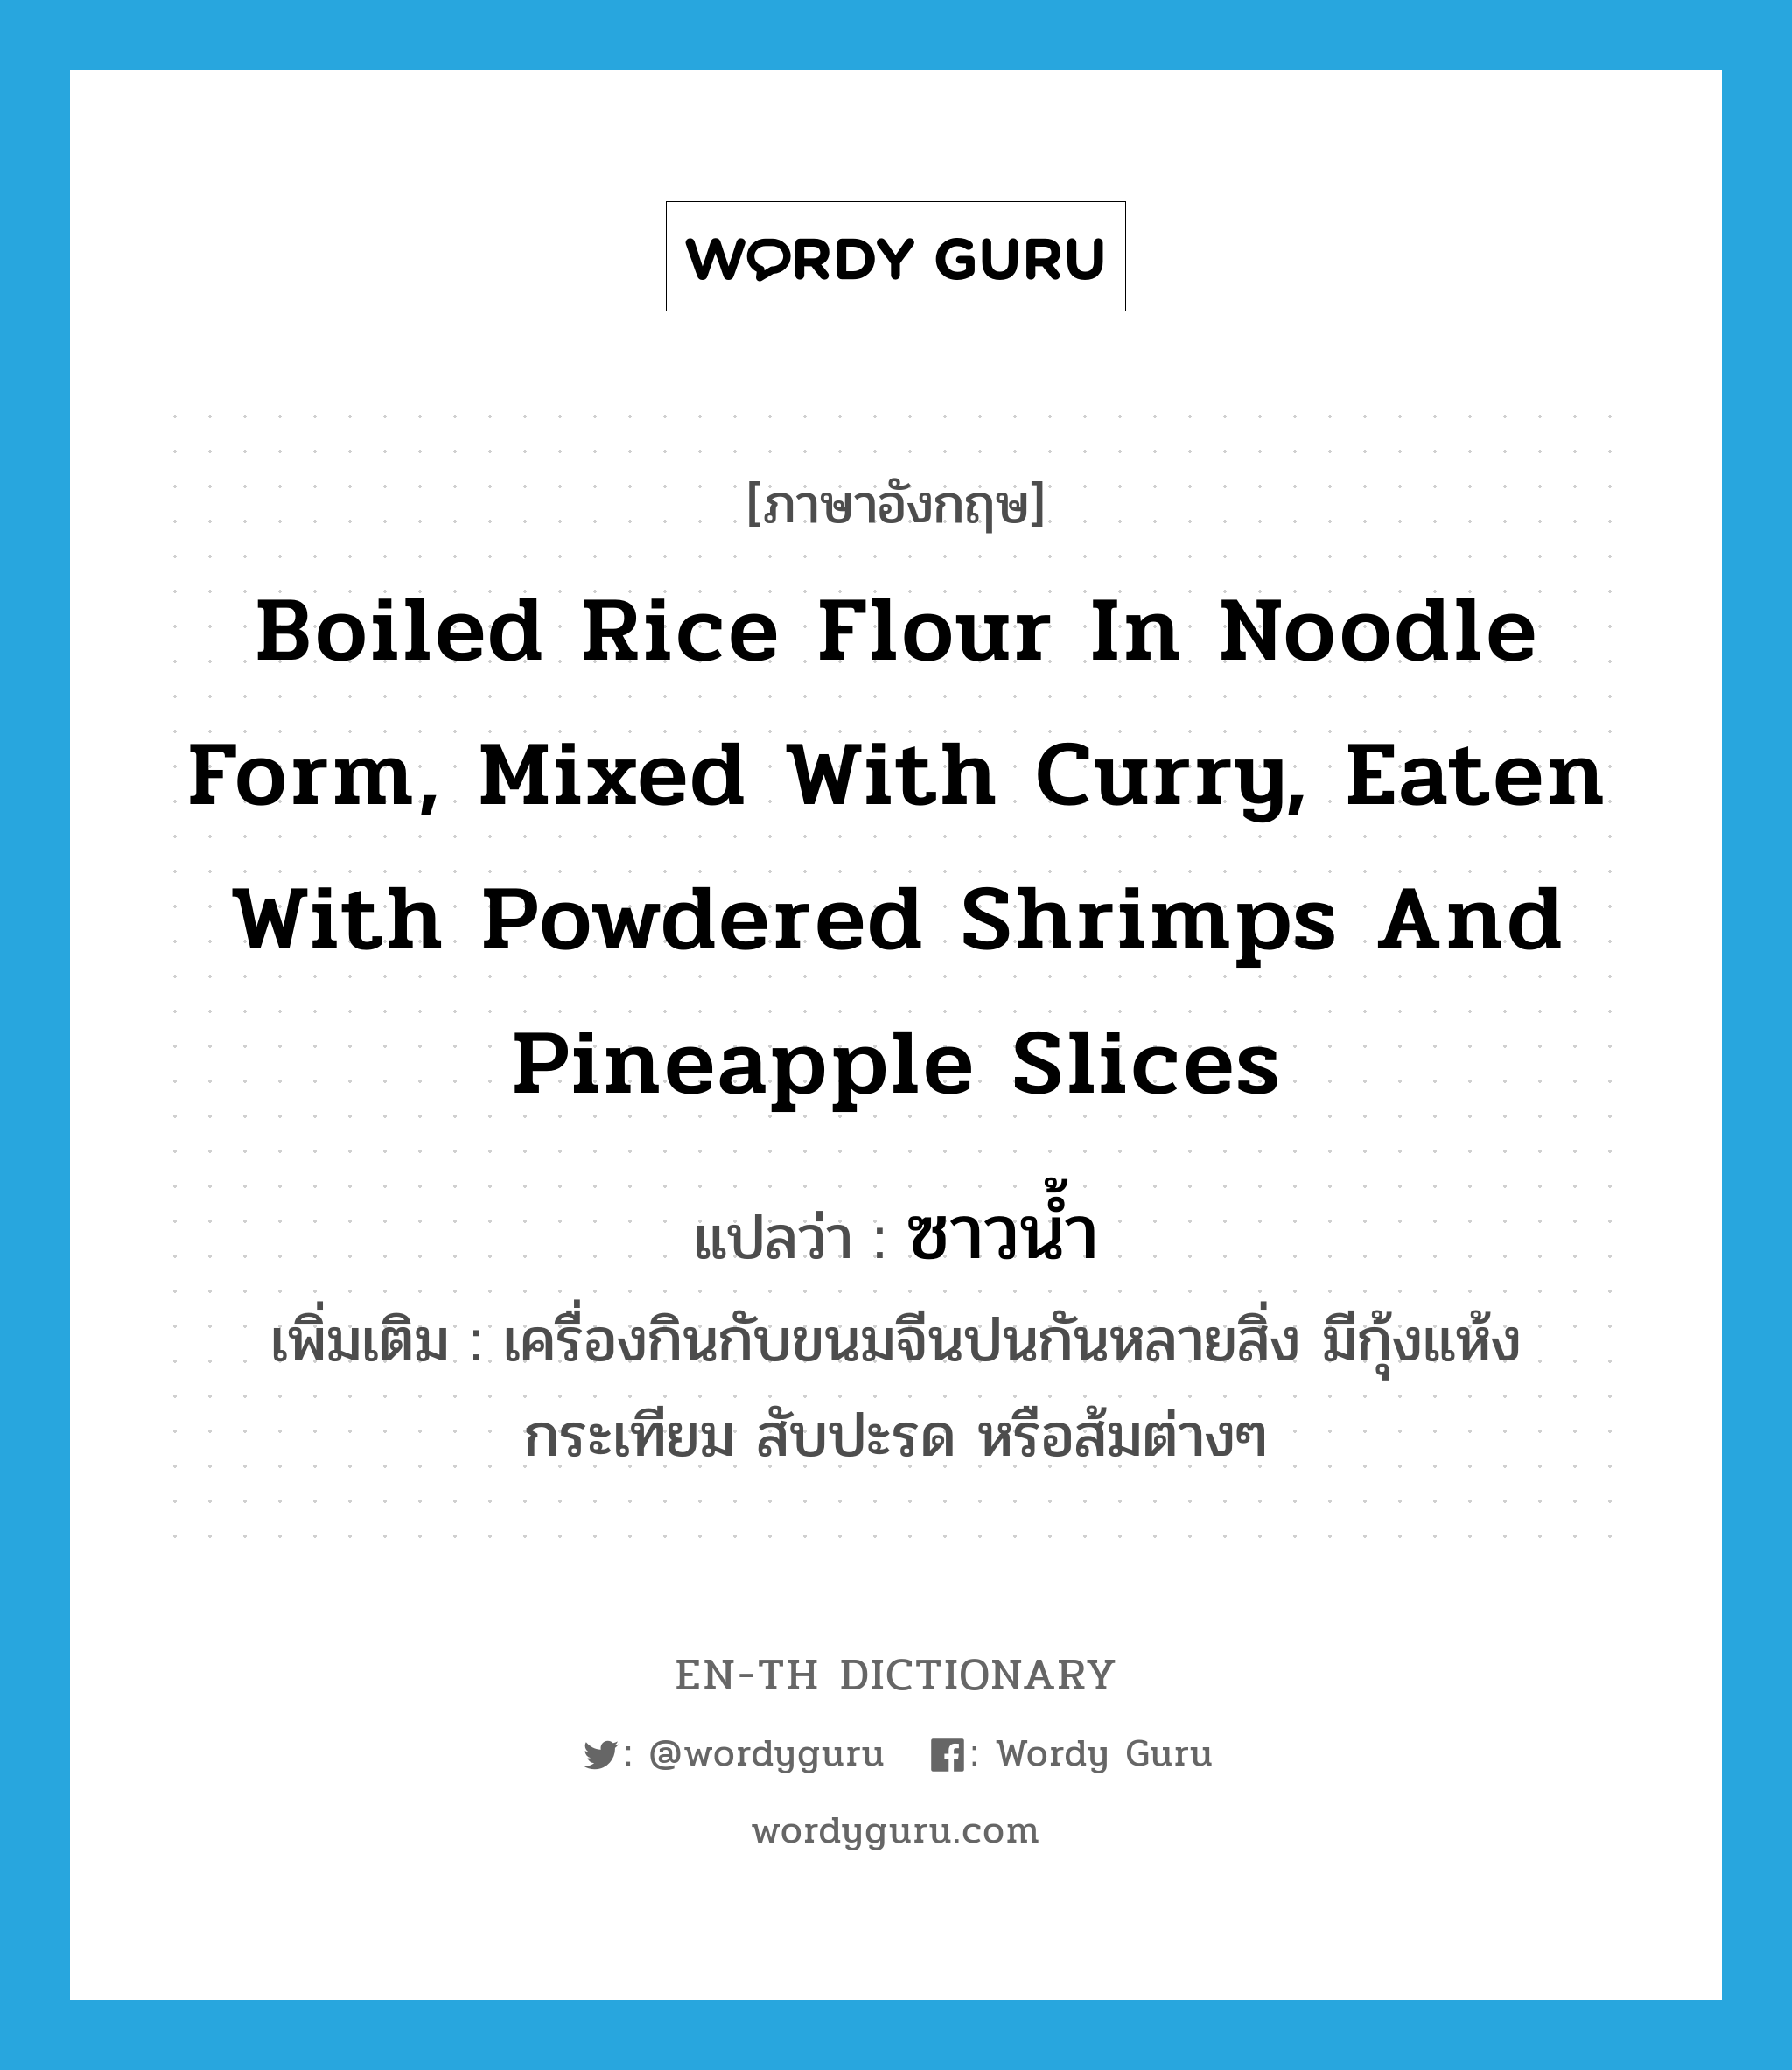 ซาวน้ำ ภาษาอังกฤษ?, คำศัพท์ภาษาอังกฤษ ซาวน้ำ แปลว่า boiled rice flour in noodle form, mixed with curry, eaten with powdered shrimps and pineapple slices ประเภท N เพิ่มเติม เครื่องกินกับขนมจีนปนกันหลายสิ่ง มีกุ้งแห้ง กระเทียม สับปะรด หรือส้มต่างๆ หมวด N